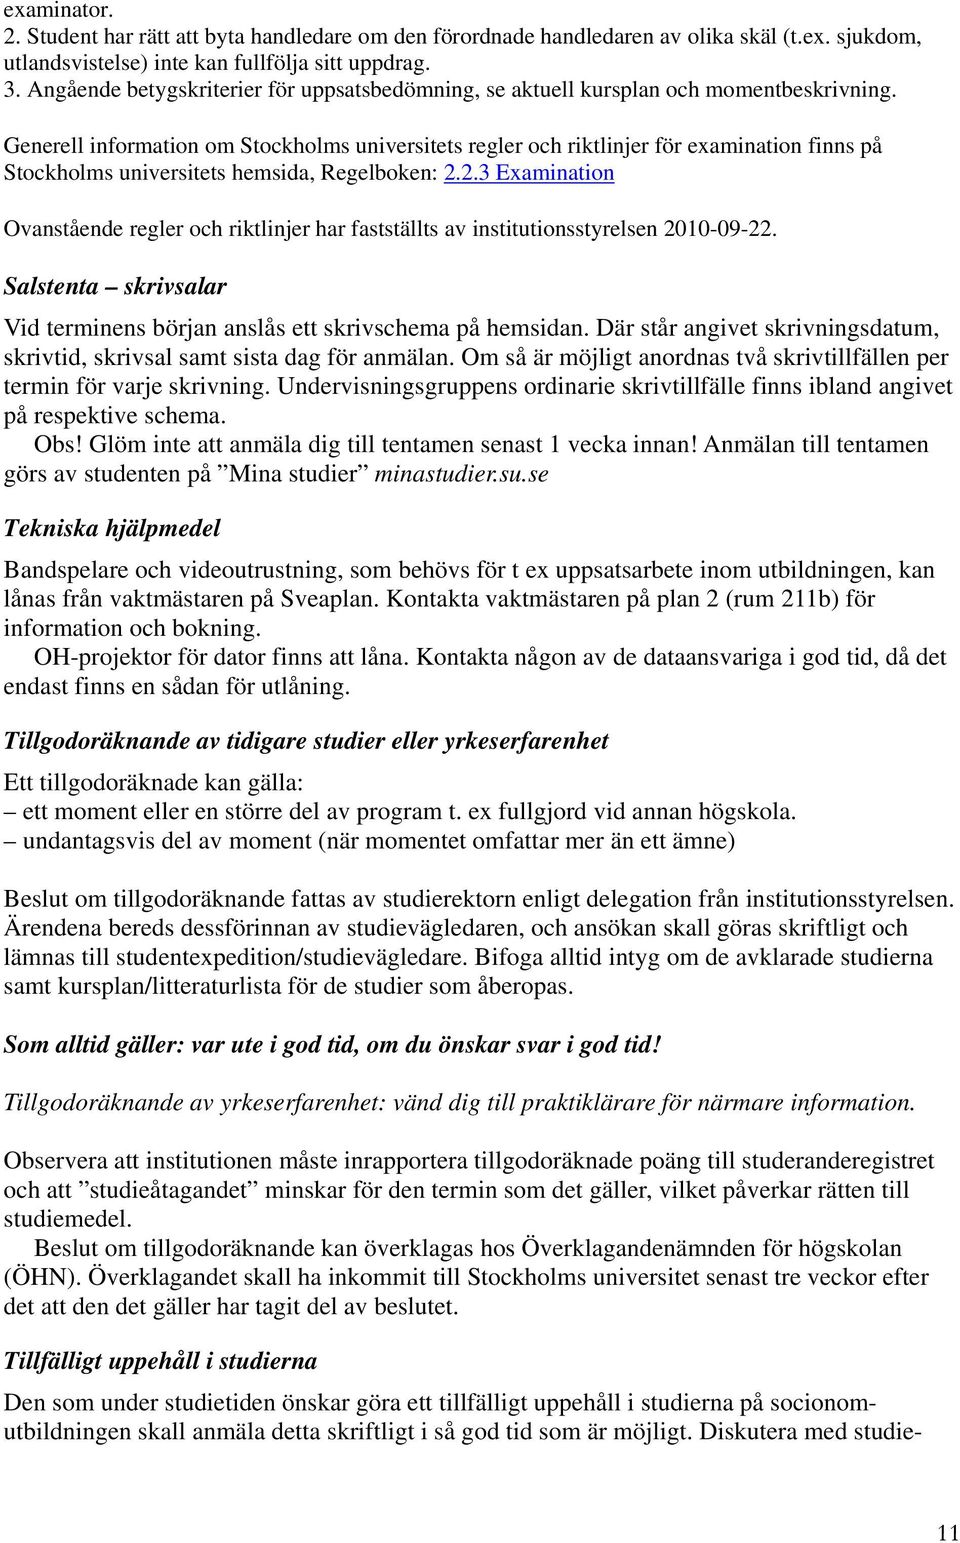 Generell information om Stockholms universitets regler och riktlinjer för examination finns på Stockholms universitets hemsida, Regelboken: 2.